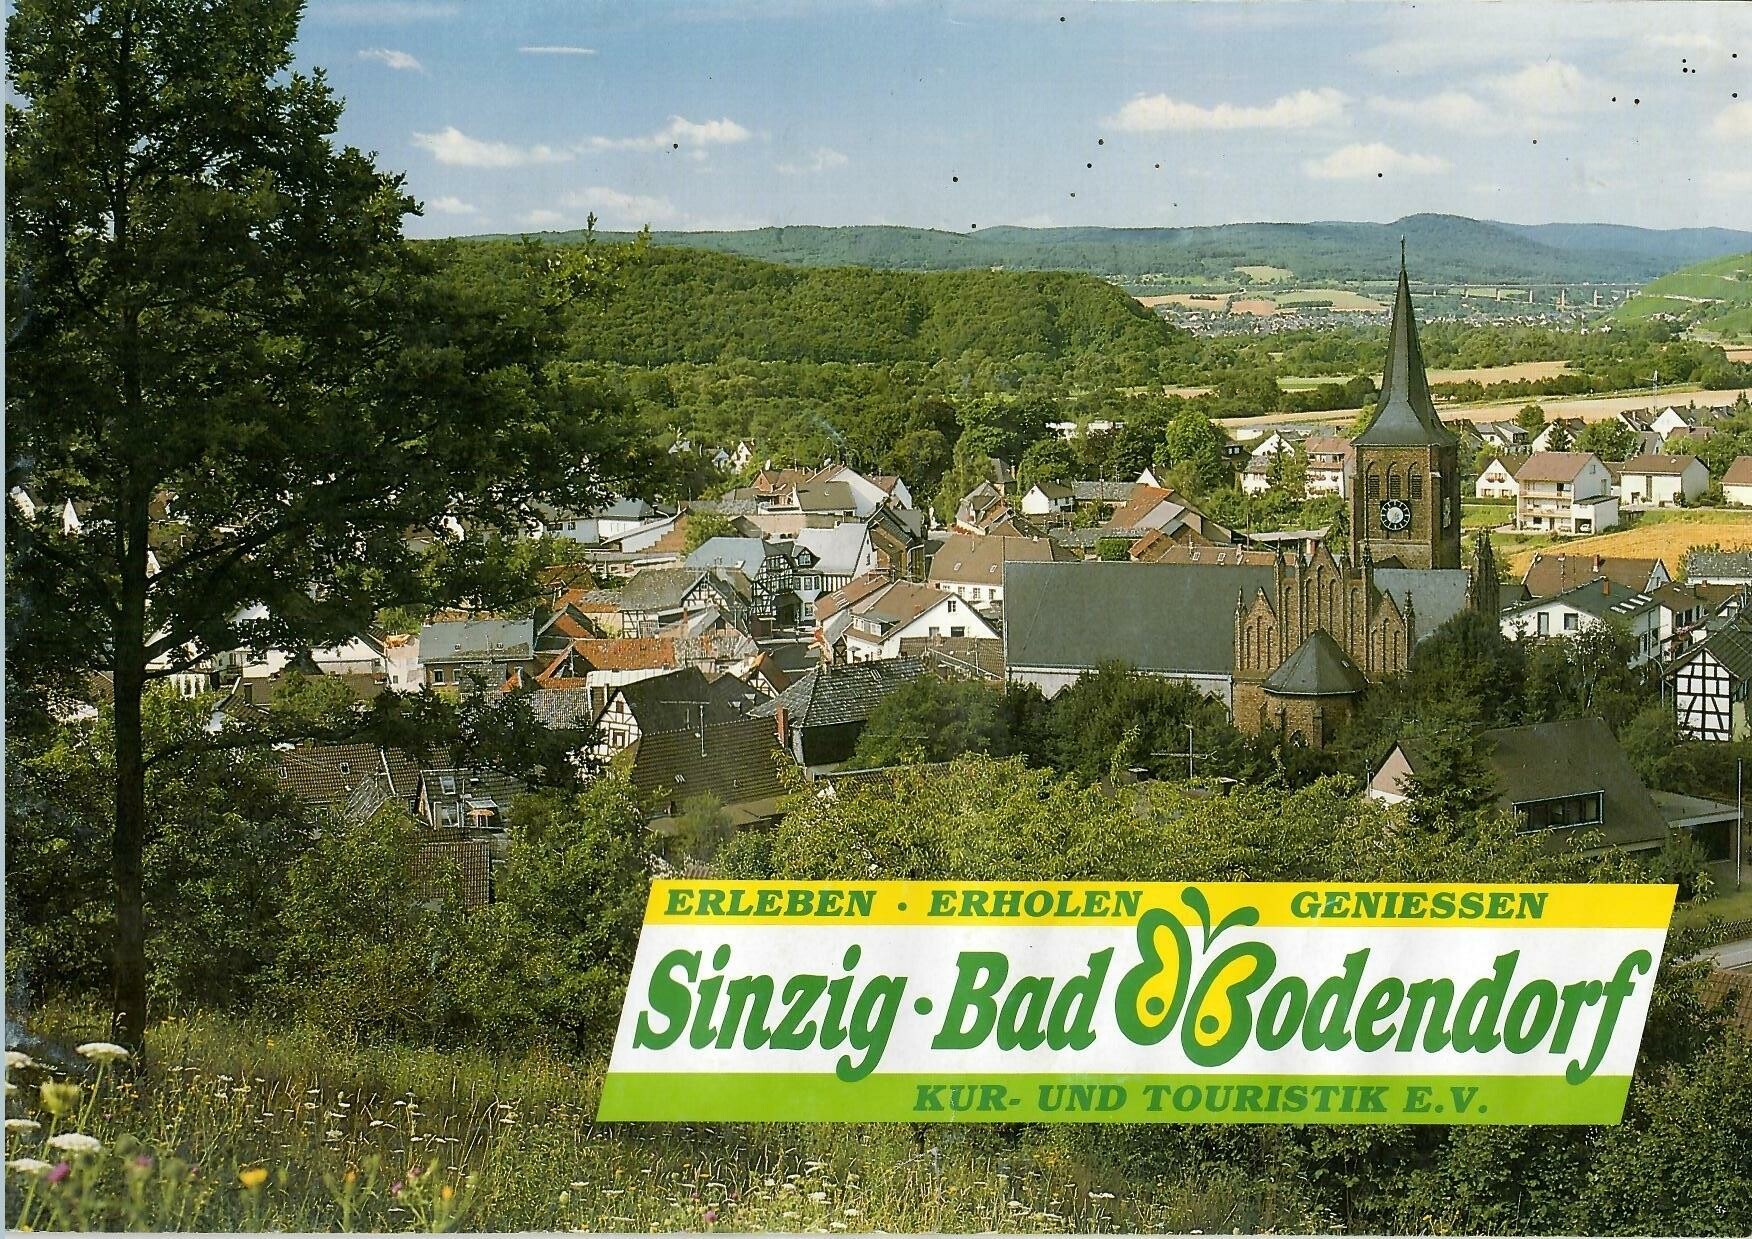 Erleben - Erholen - Geniesen Sinzig-Bad Bodendorf Kur- und Ttouristik E. V. (Heimatarchiv Bad Bodendorf CC BY-NC-SA)